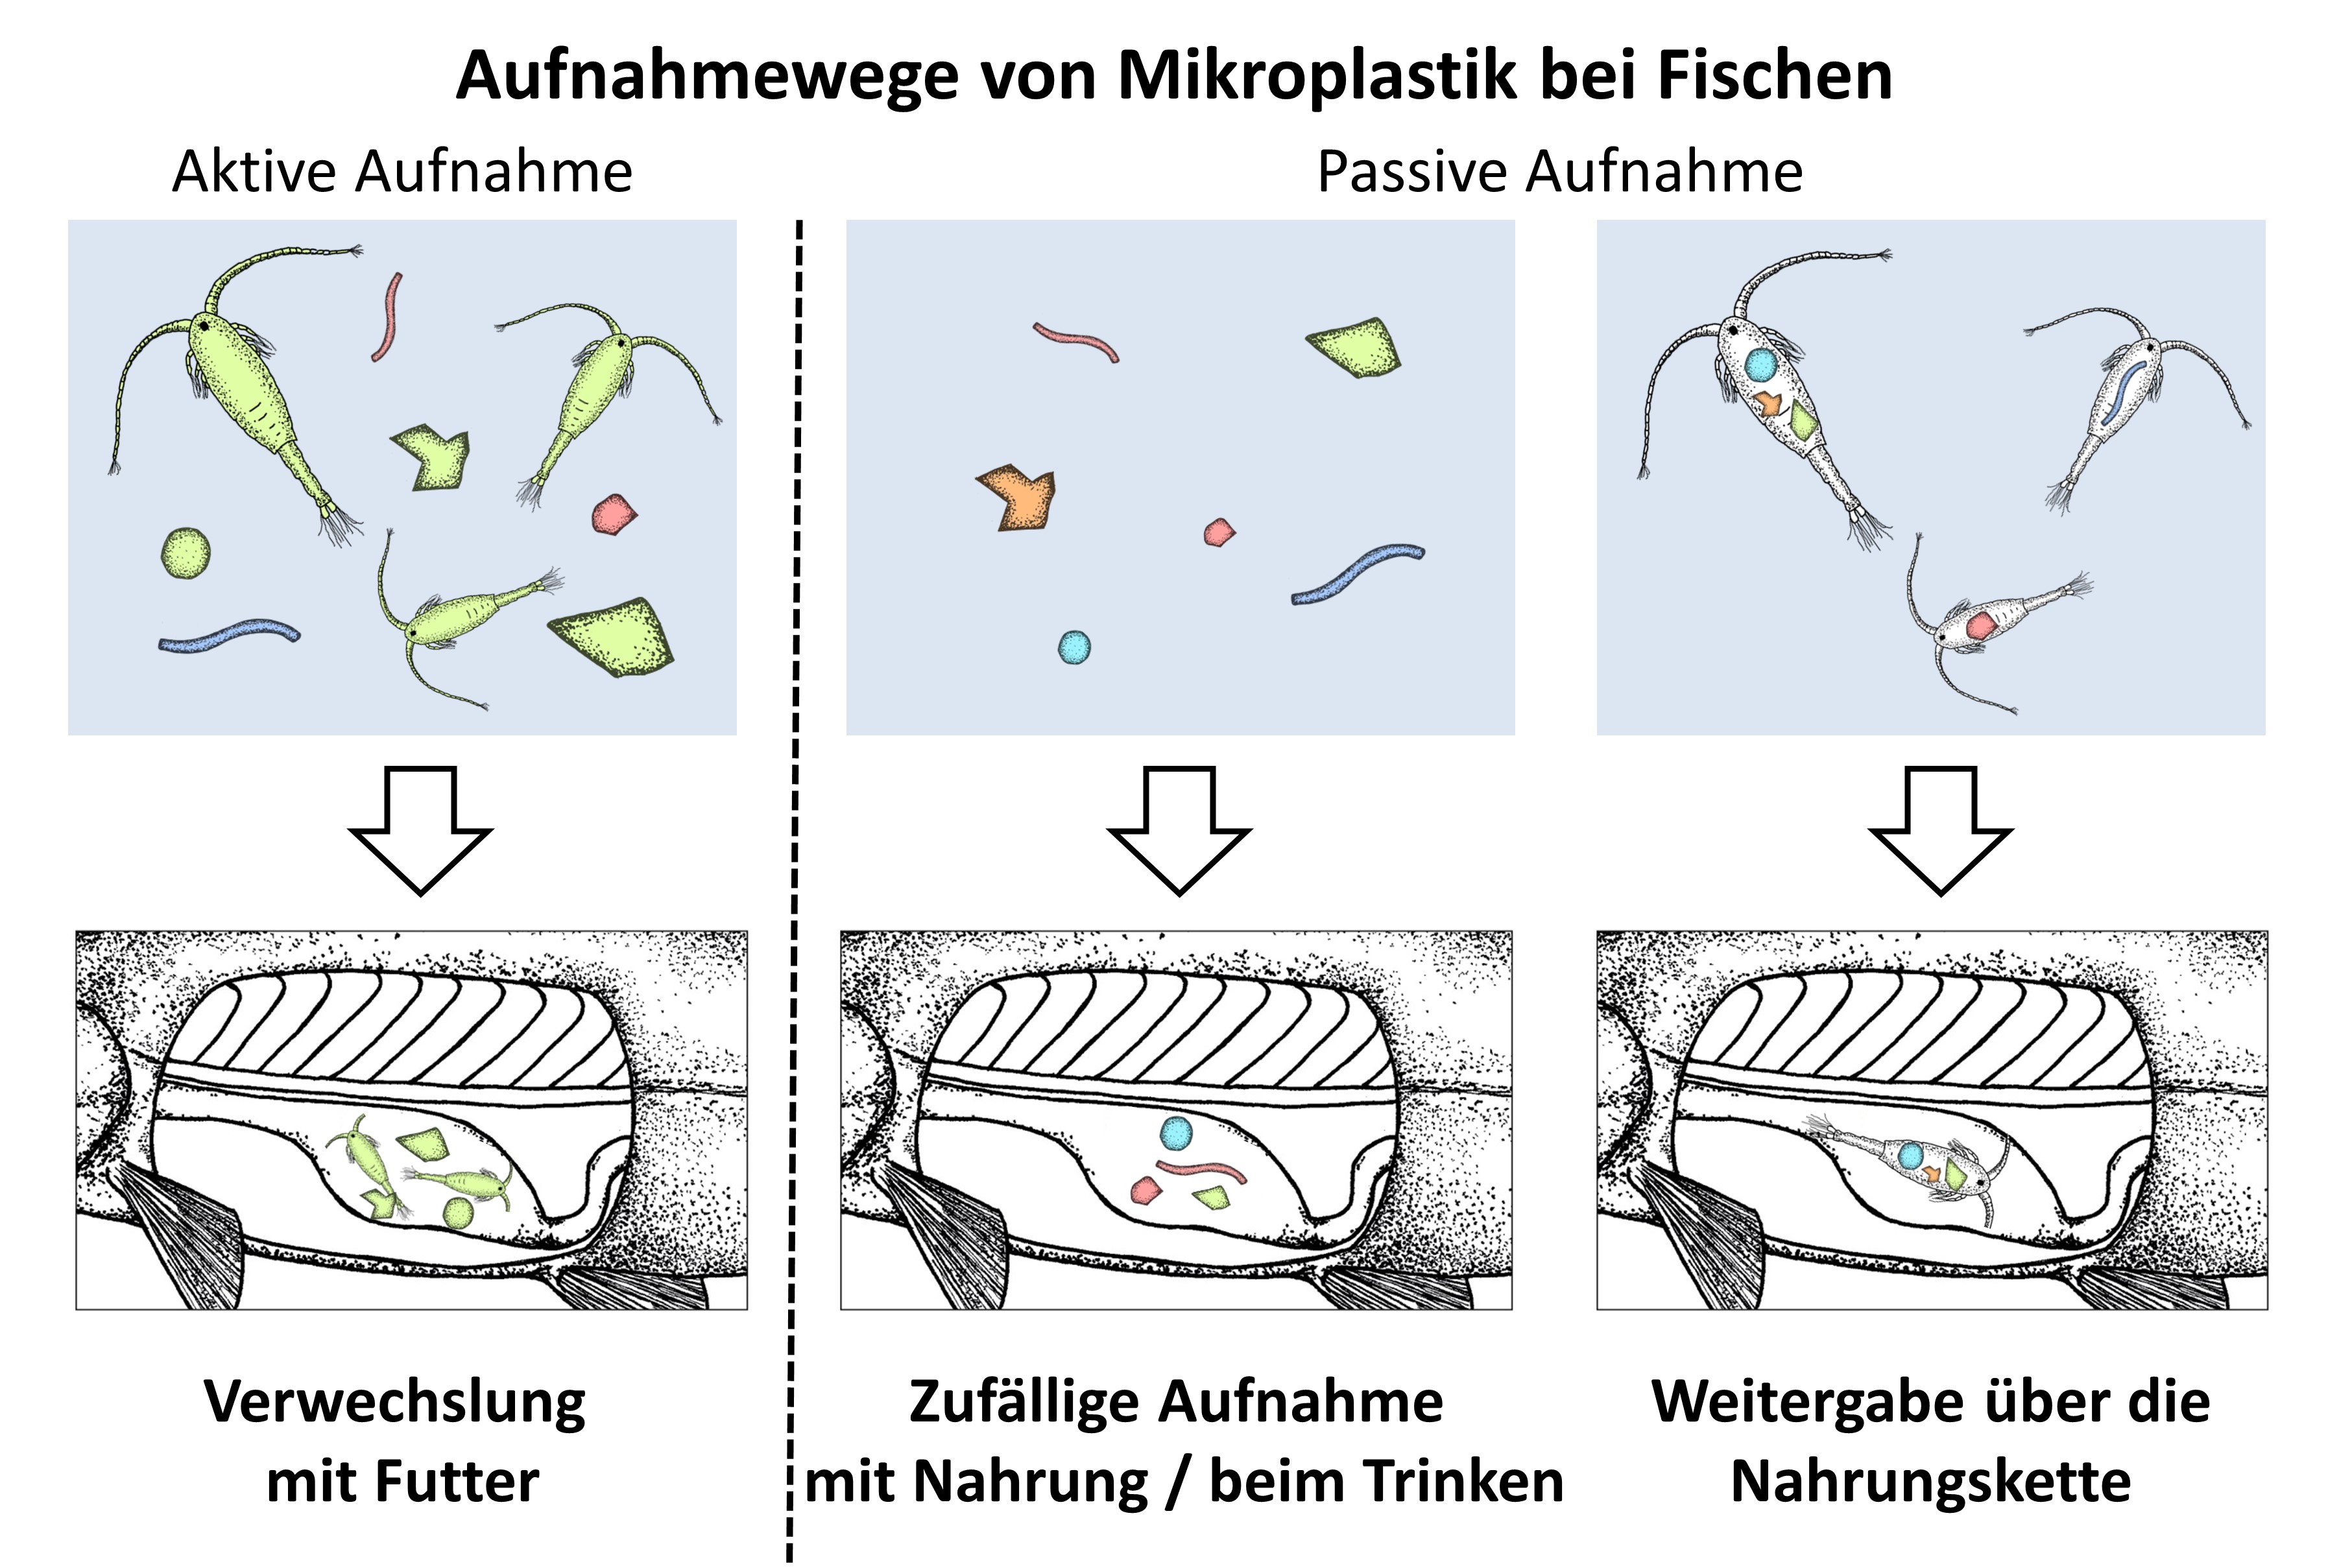 Aufnahmewege von Mikroplastik bei Fischen